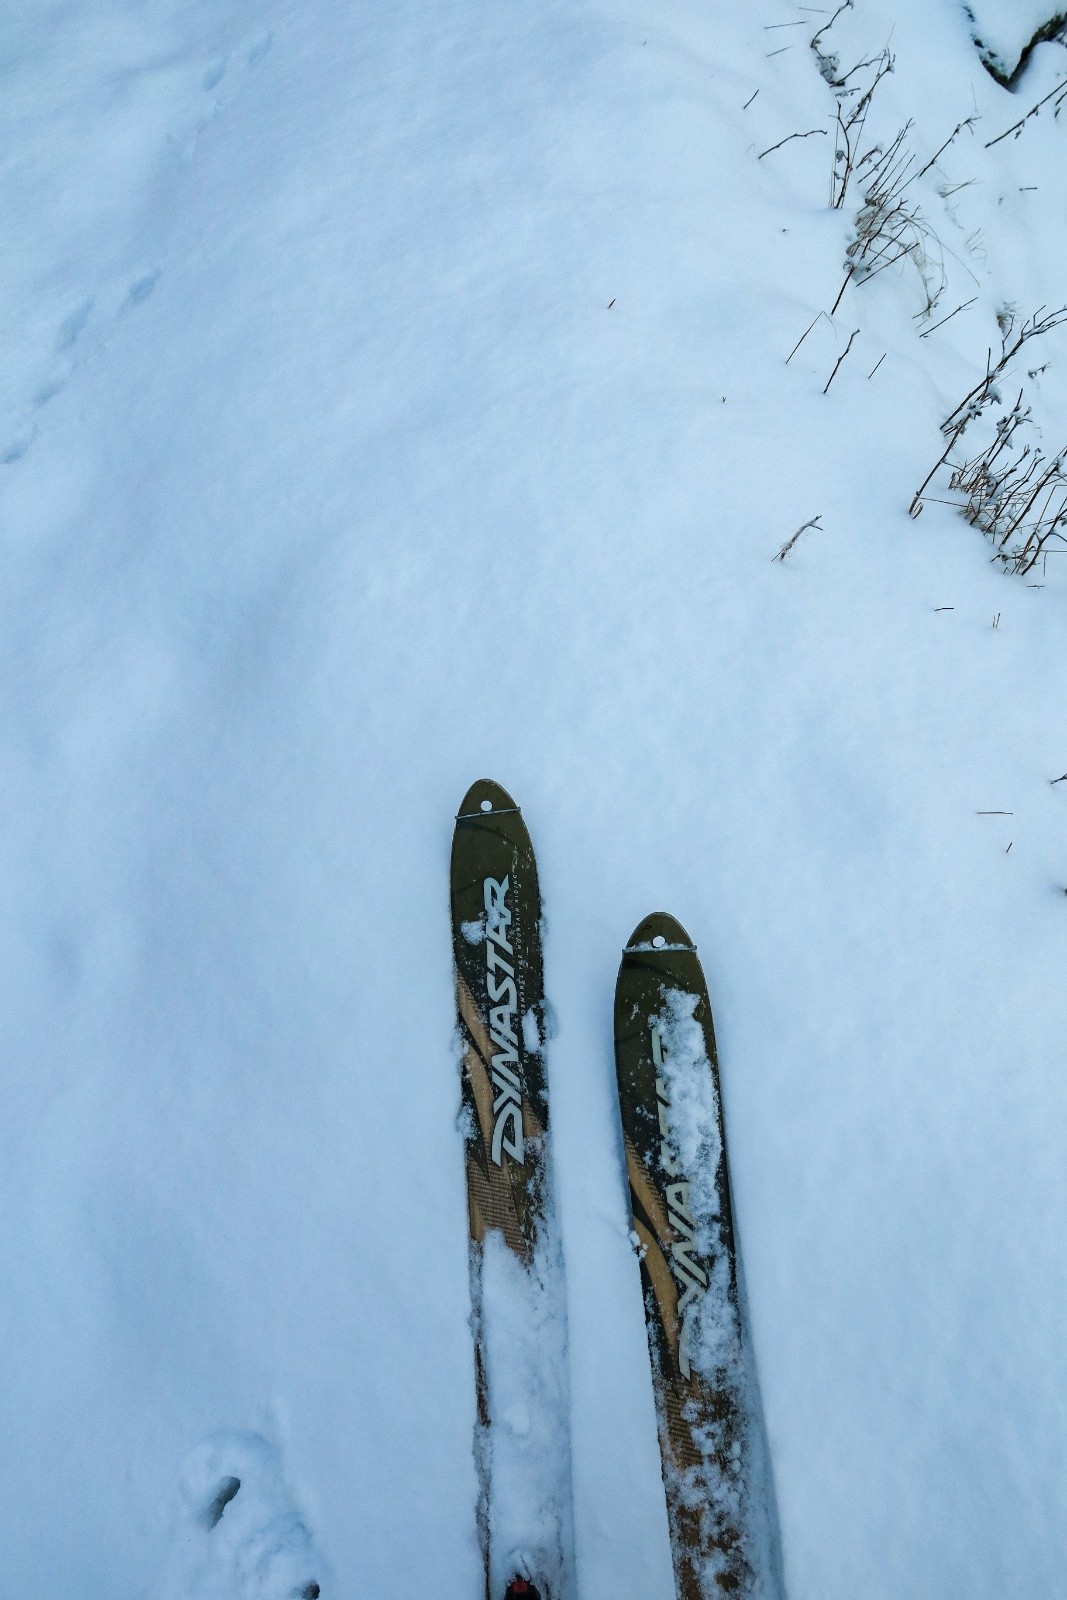 Les valeureux skis cailloux ! 